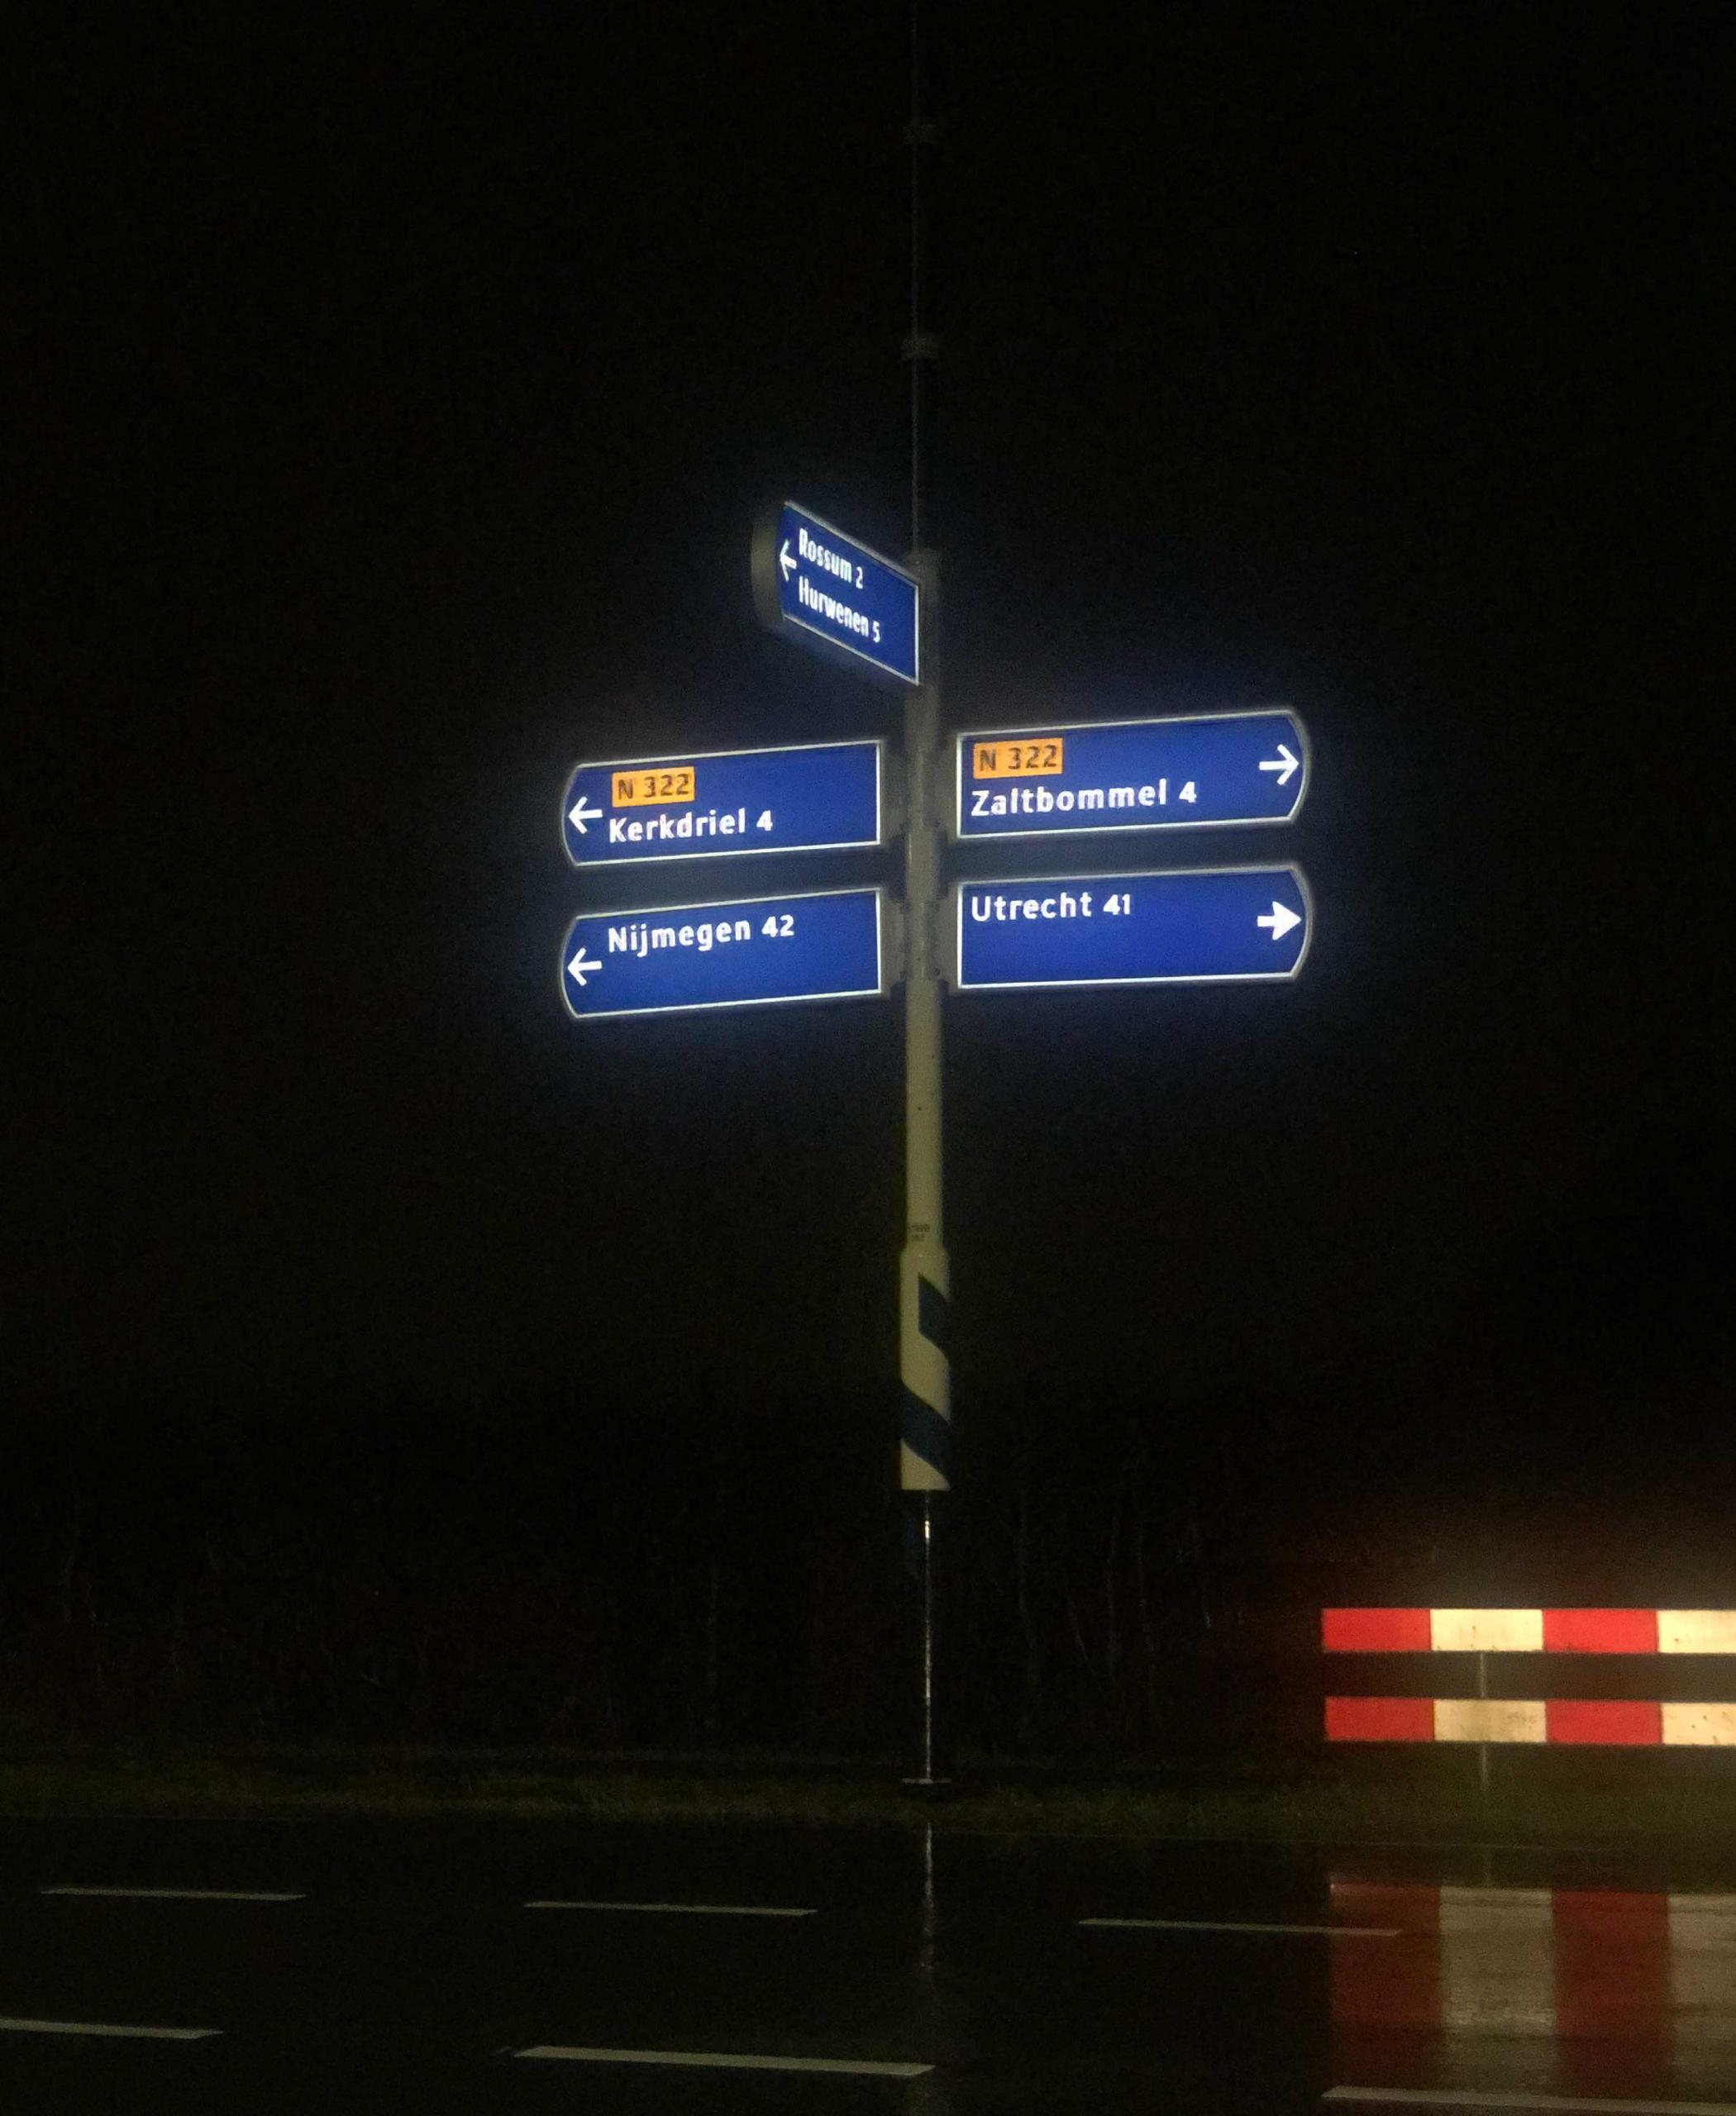 Der solarbetriebene Soluxio Verkehrszeichen bei Nacht, mit von innen beleuchteten Wegweisern